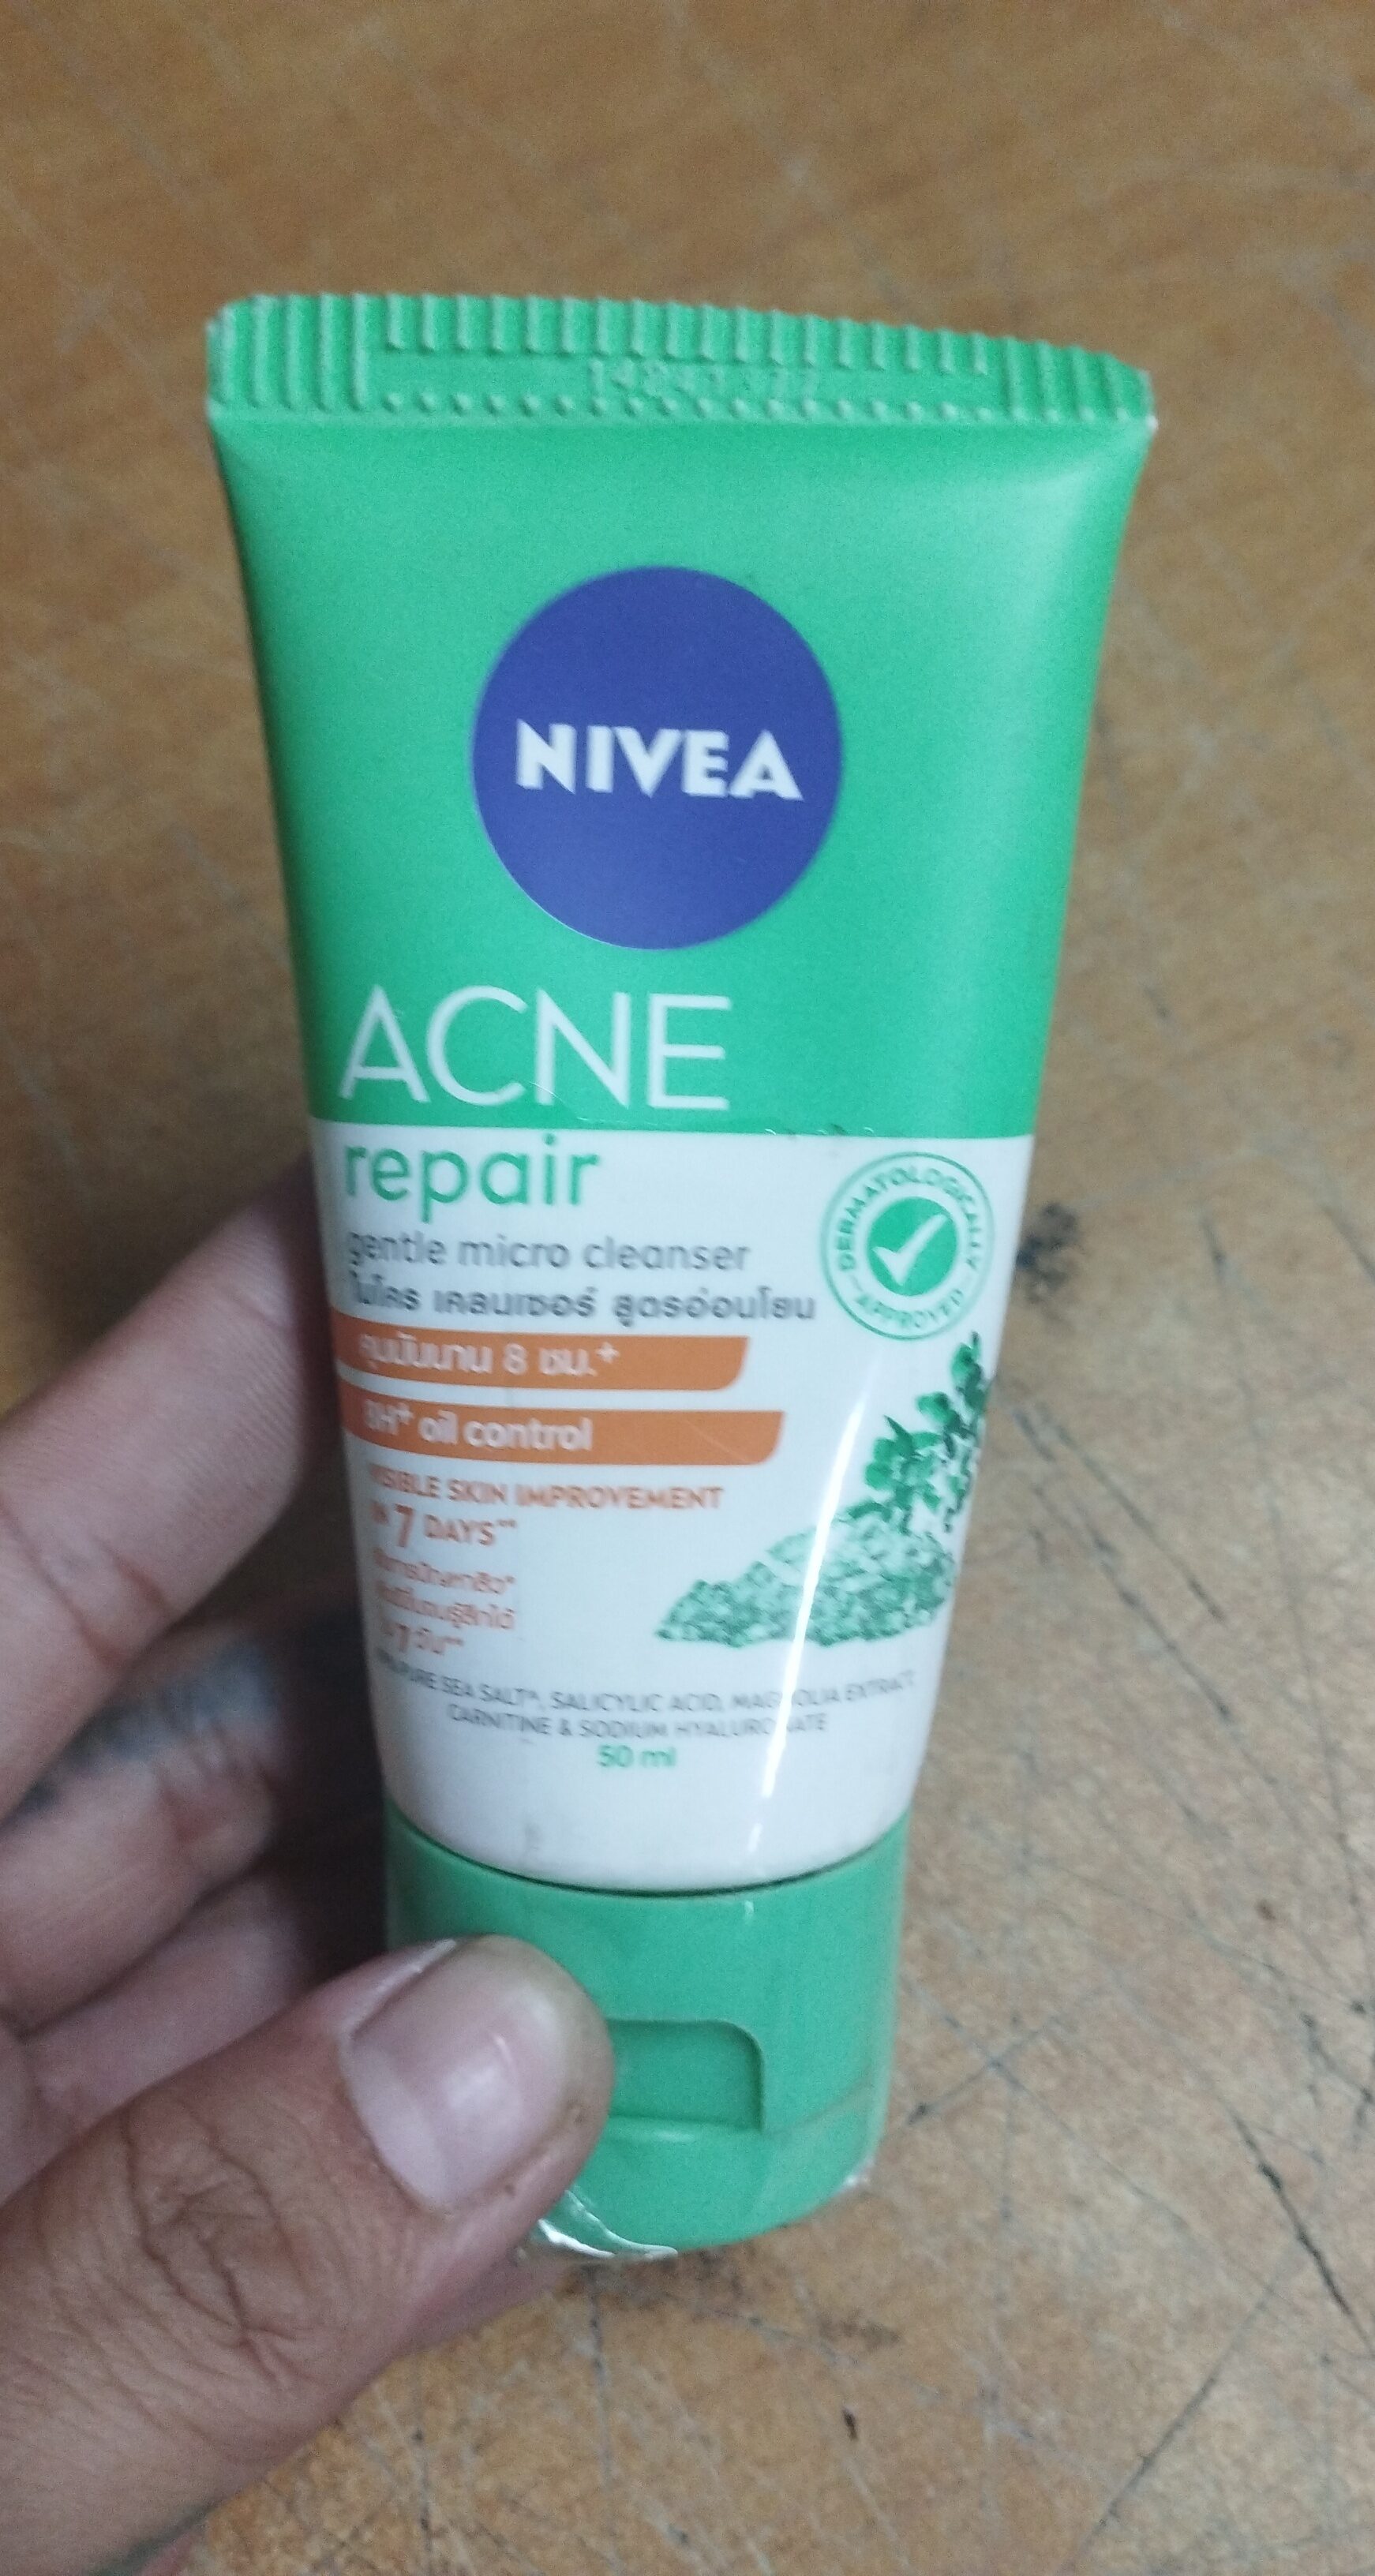 Nivea acne repair - Product - en